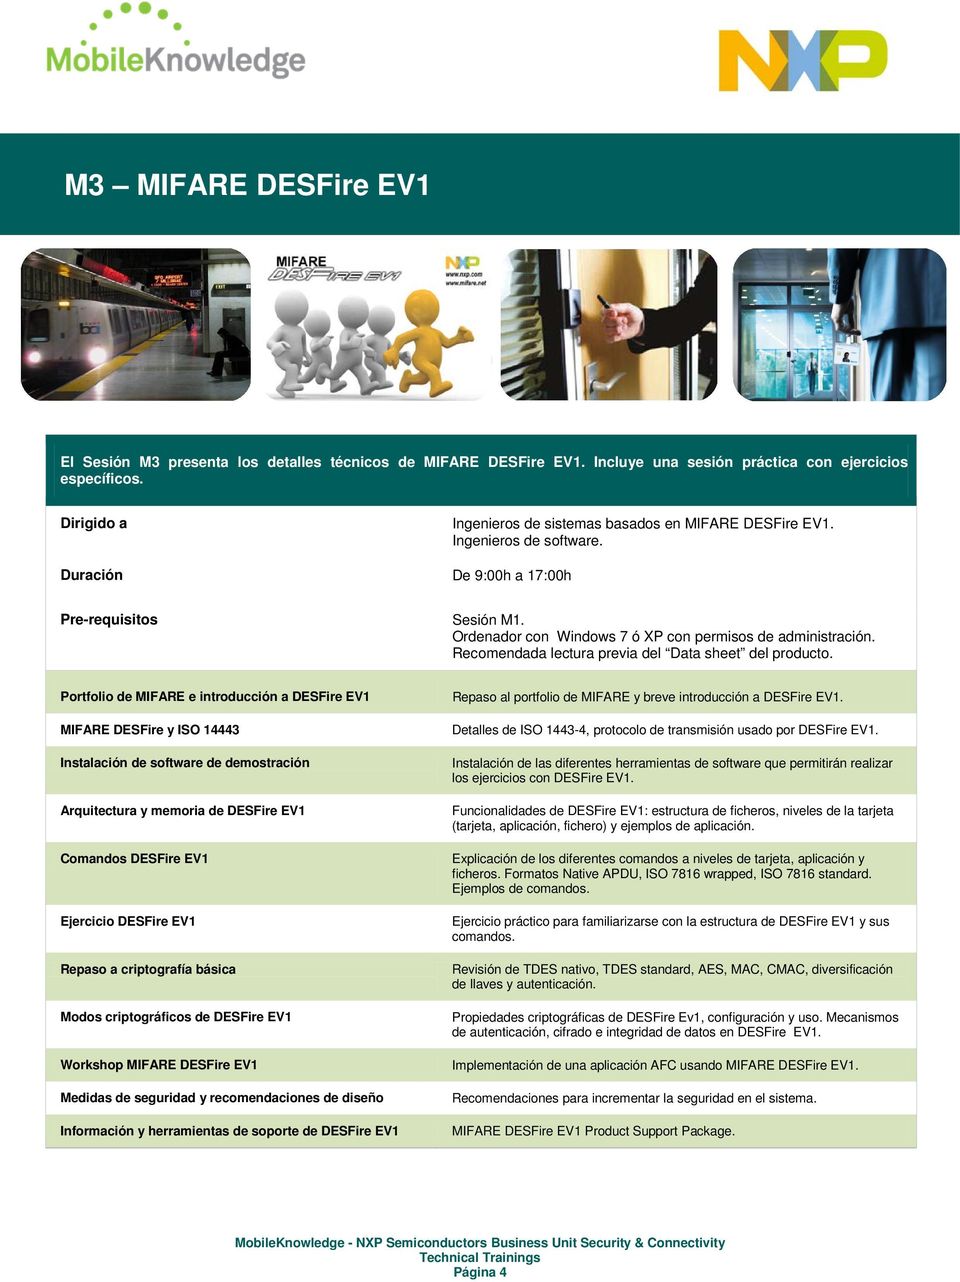 Portfolio de MIFARE e introducción a DESFire EV1 MIFARE DESFire y ISO 14443 Instalación de software de demostración Arquitectura y memoria de DESFire EV1 Comandos DESFire EV1 Ejercicio DESFire EV1